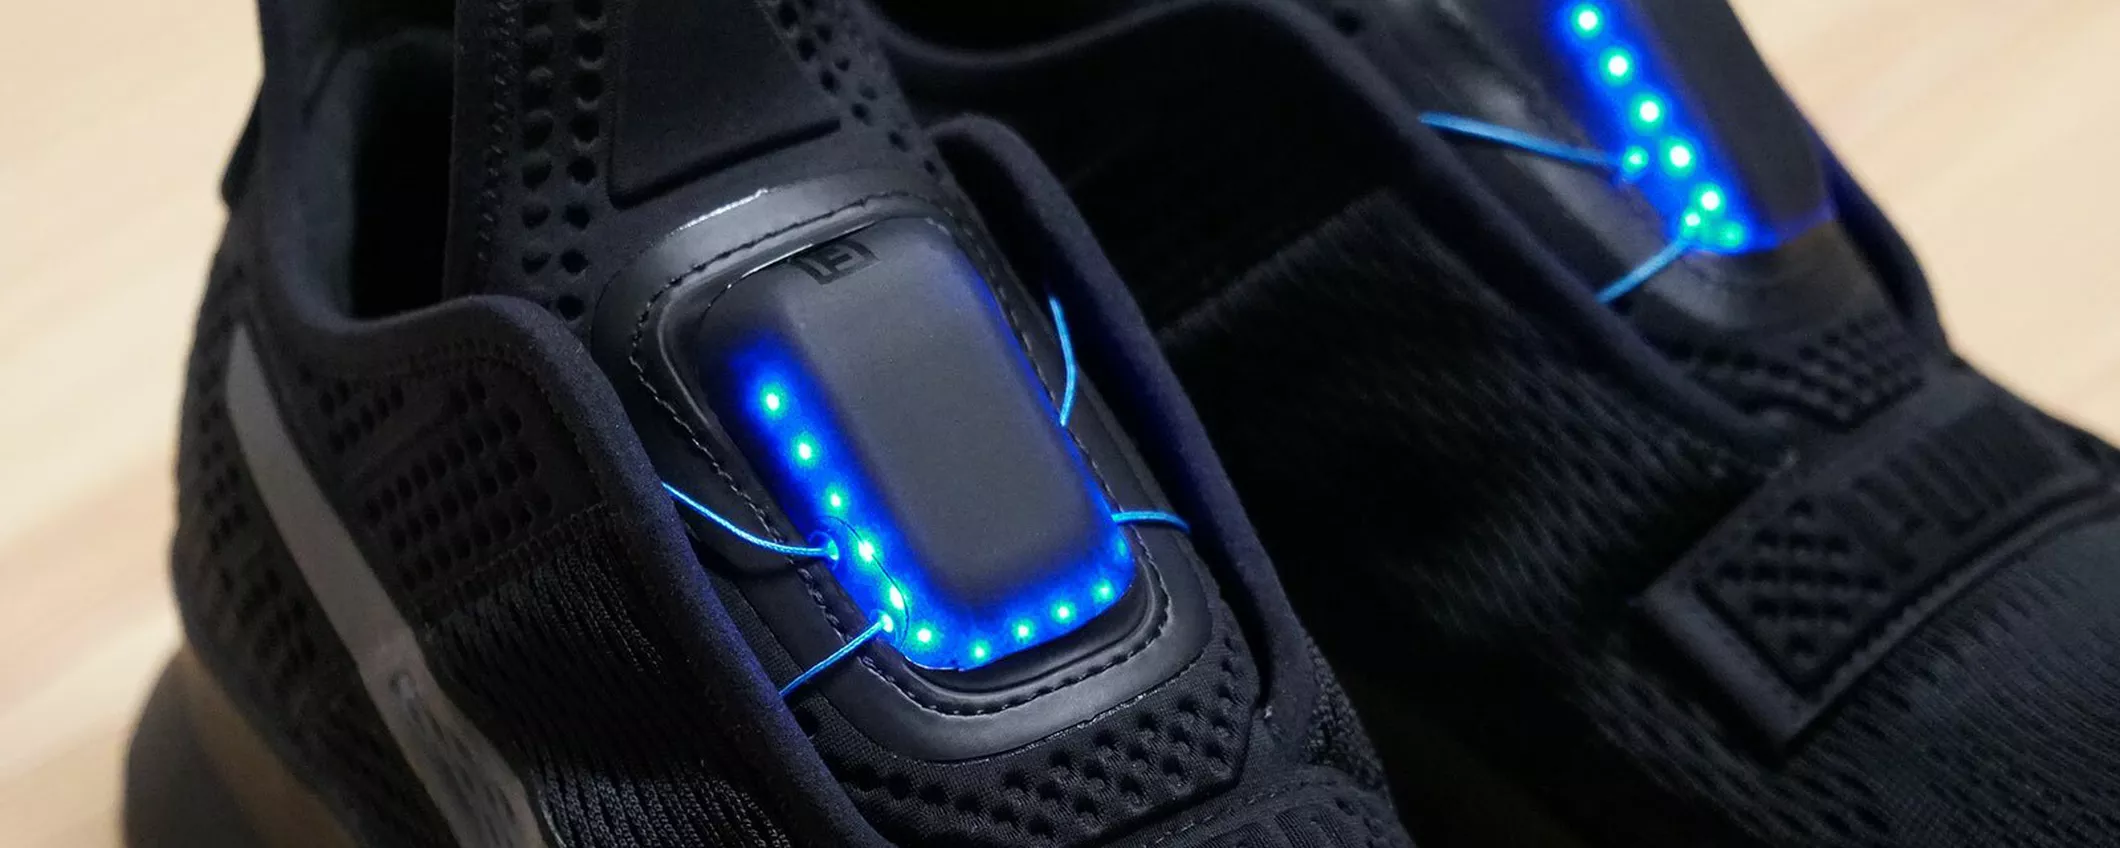 Puma Fi, la sfida di Puma alle scarpe auto-allaccianti di Nike